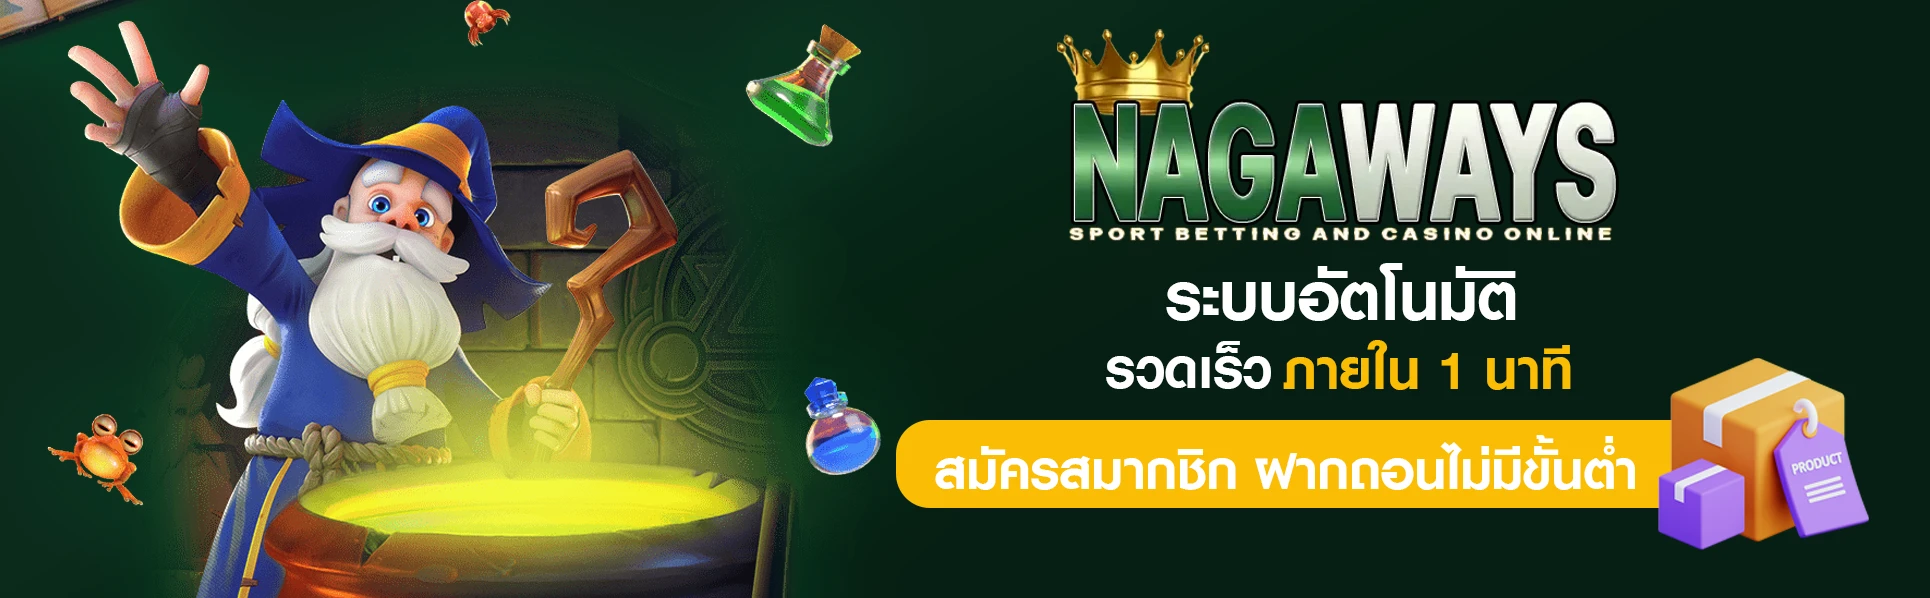 เกมสล็อตออนไลน์ nagaway slot สิงคโปร์ API แท้